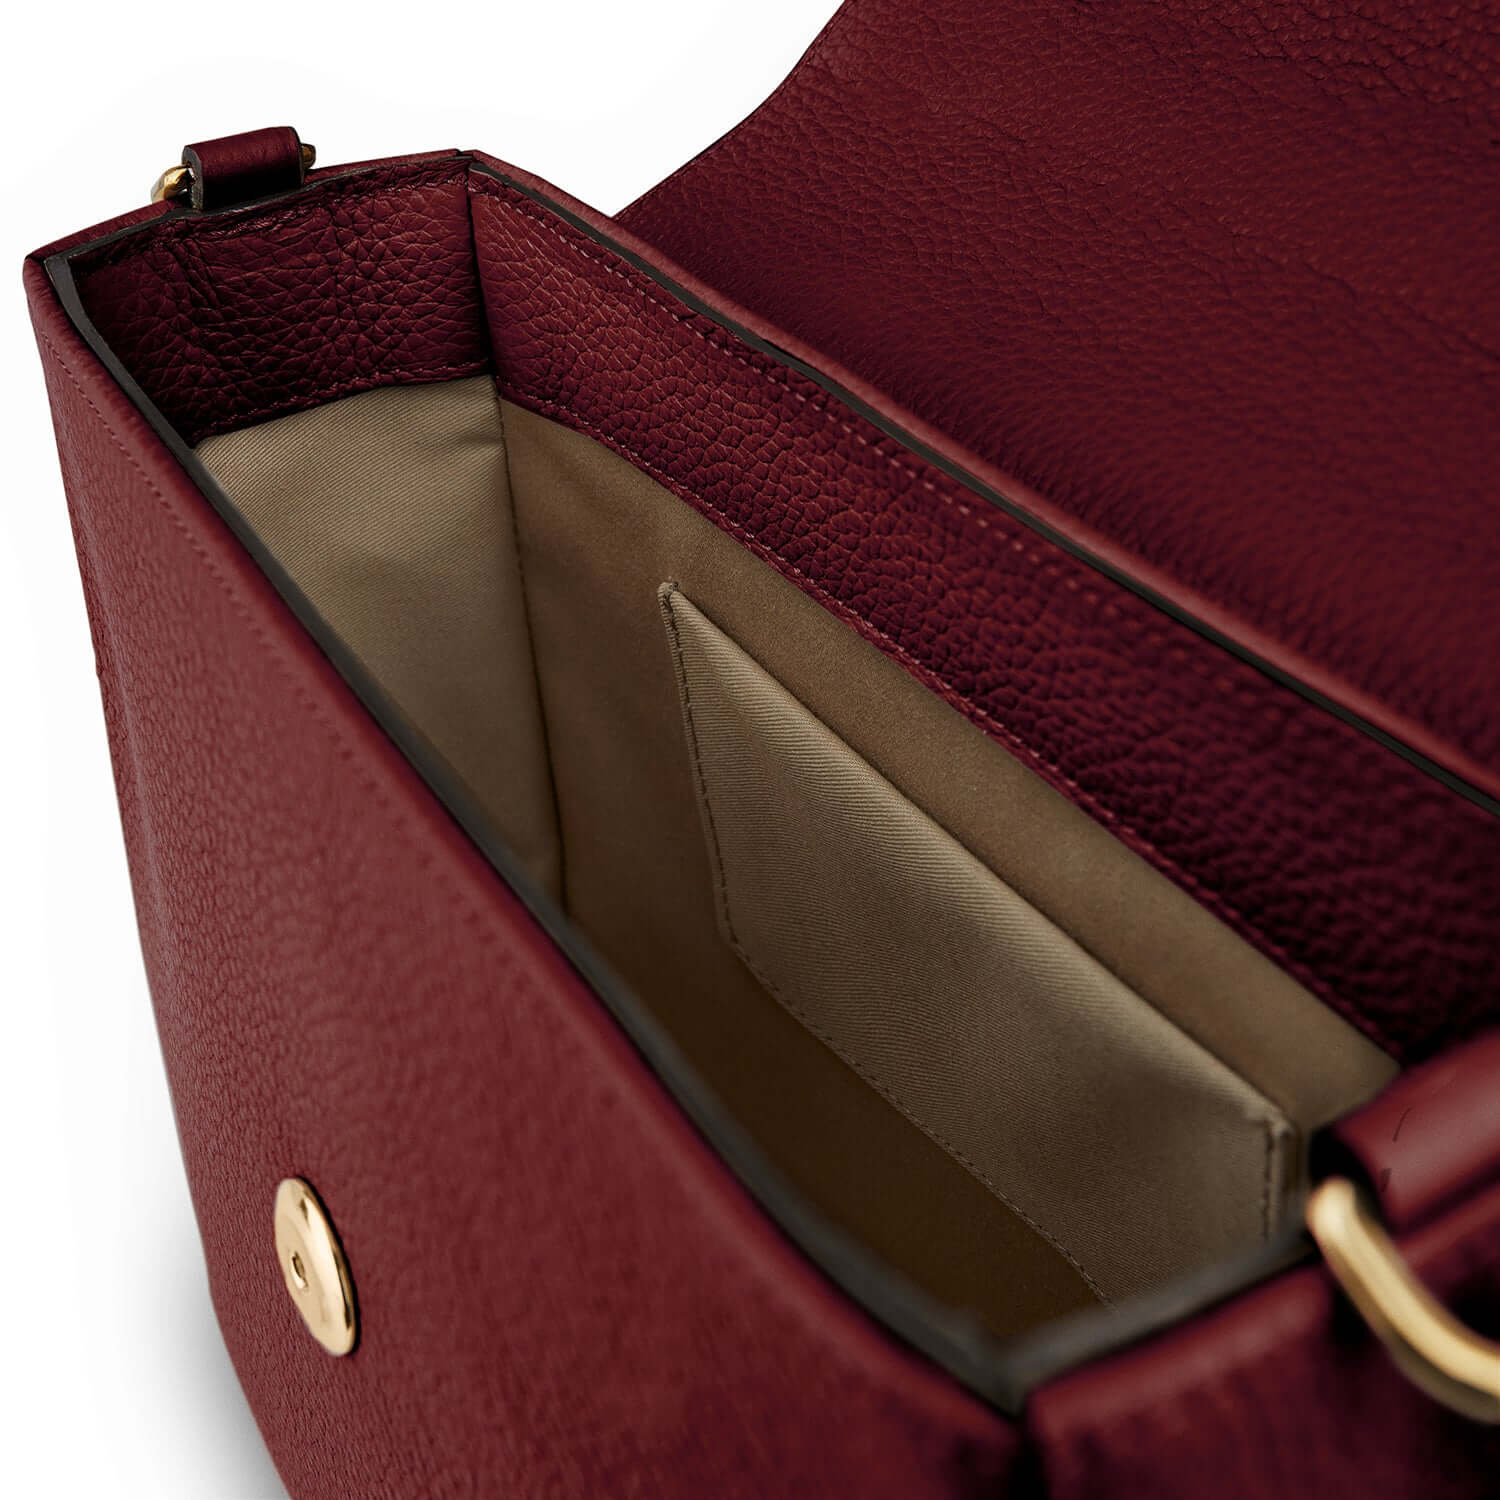 Leather handbag Charlotte Elizabeth Red in Leather - 37247223